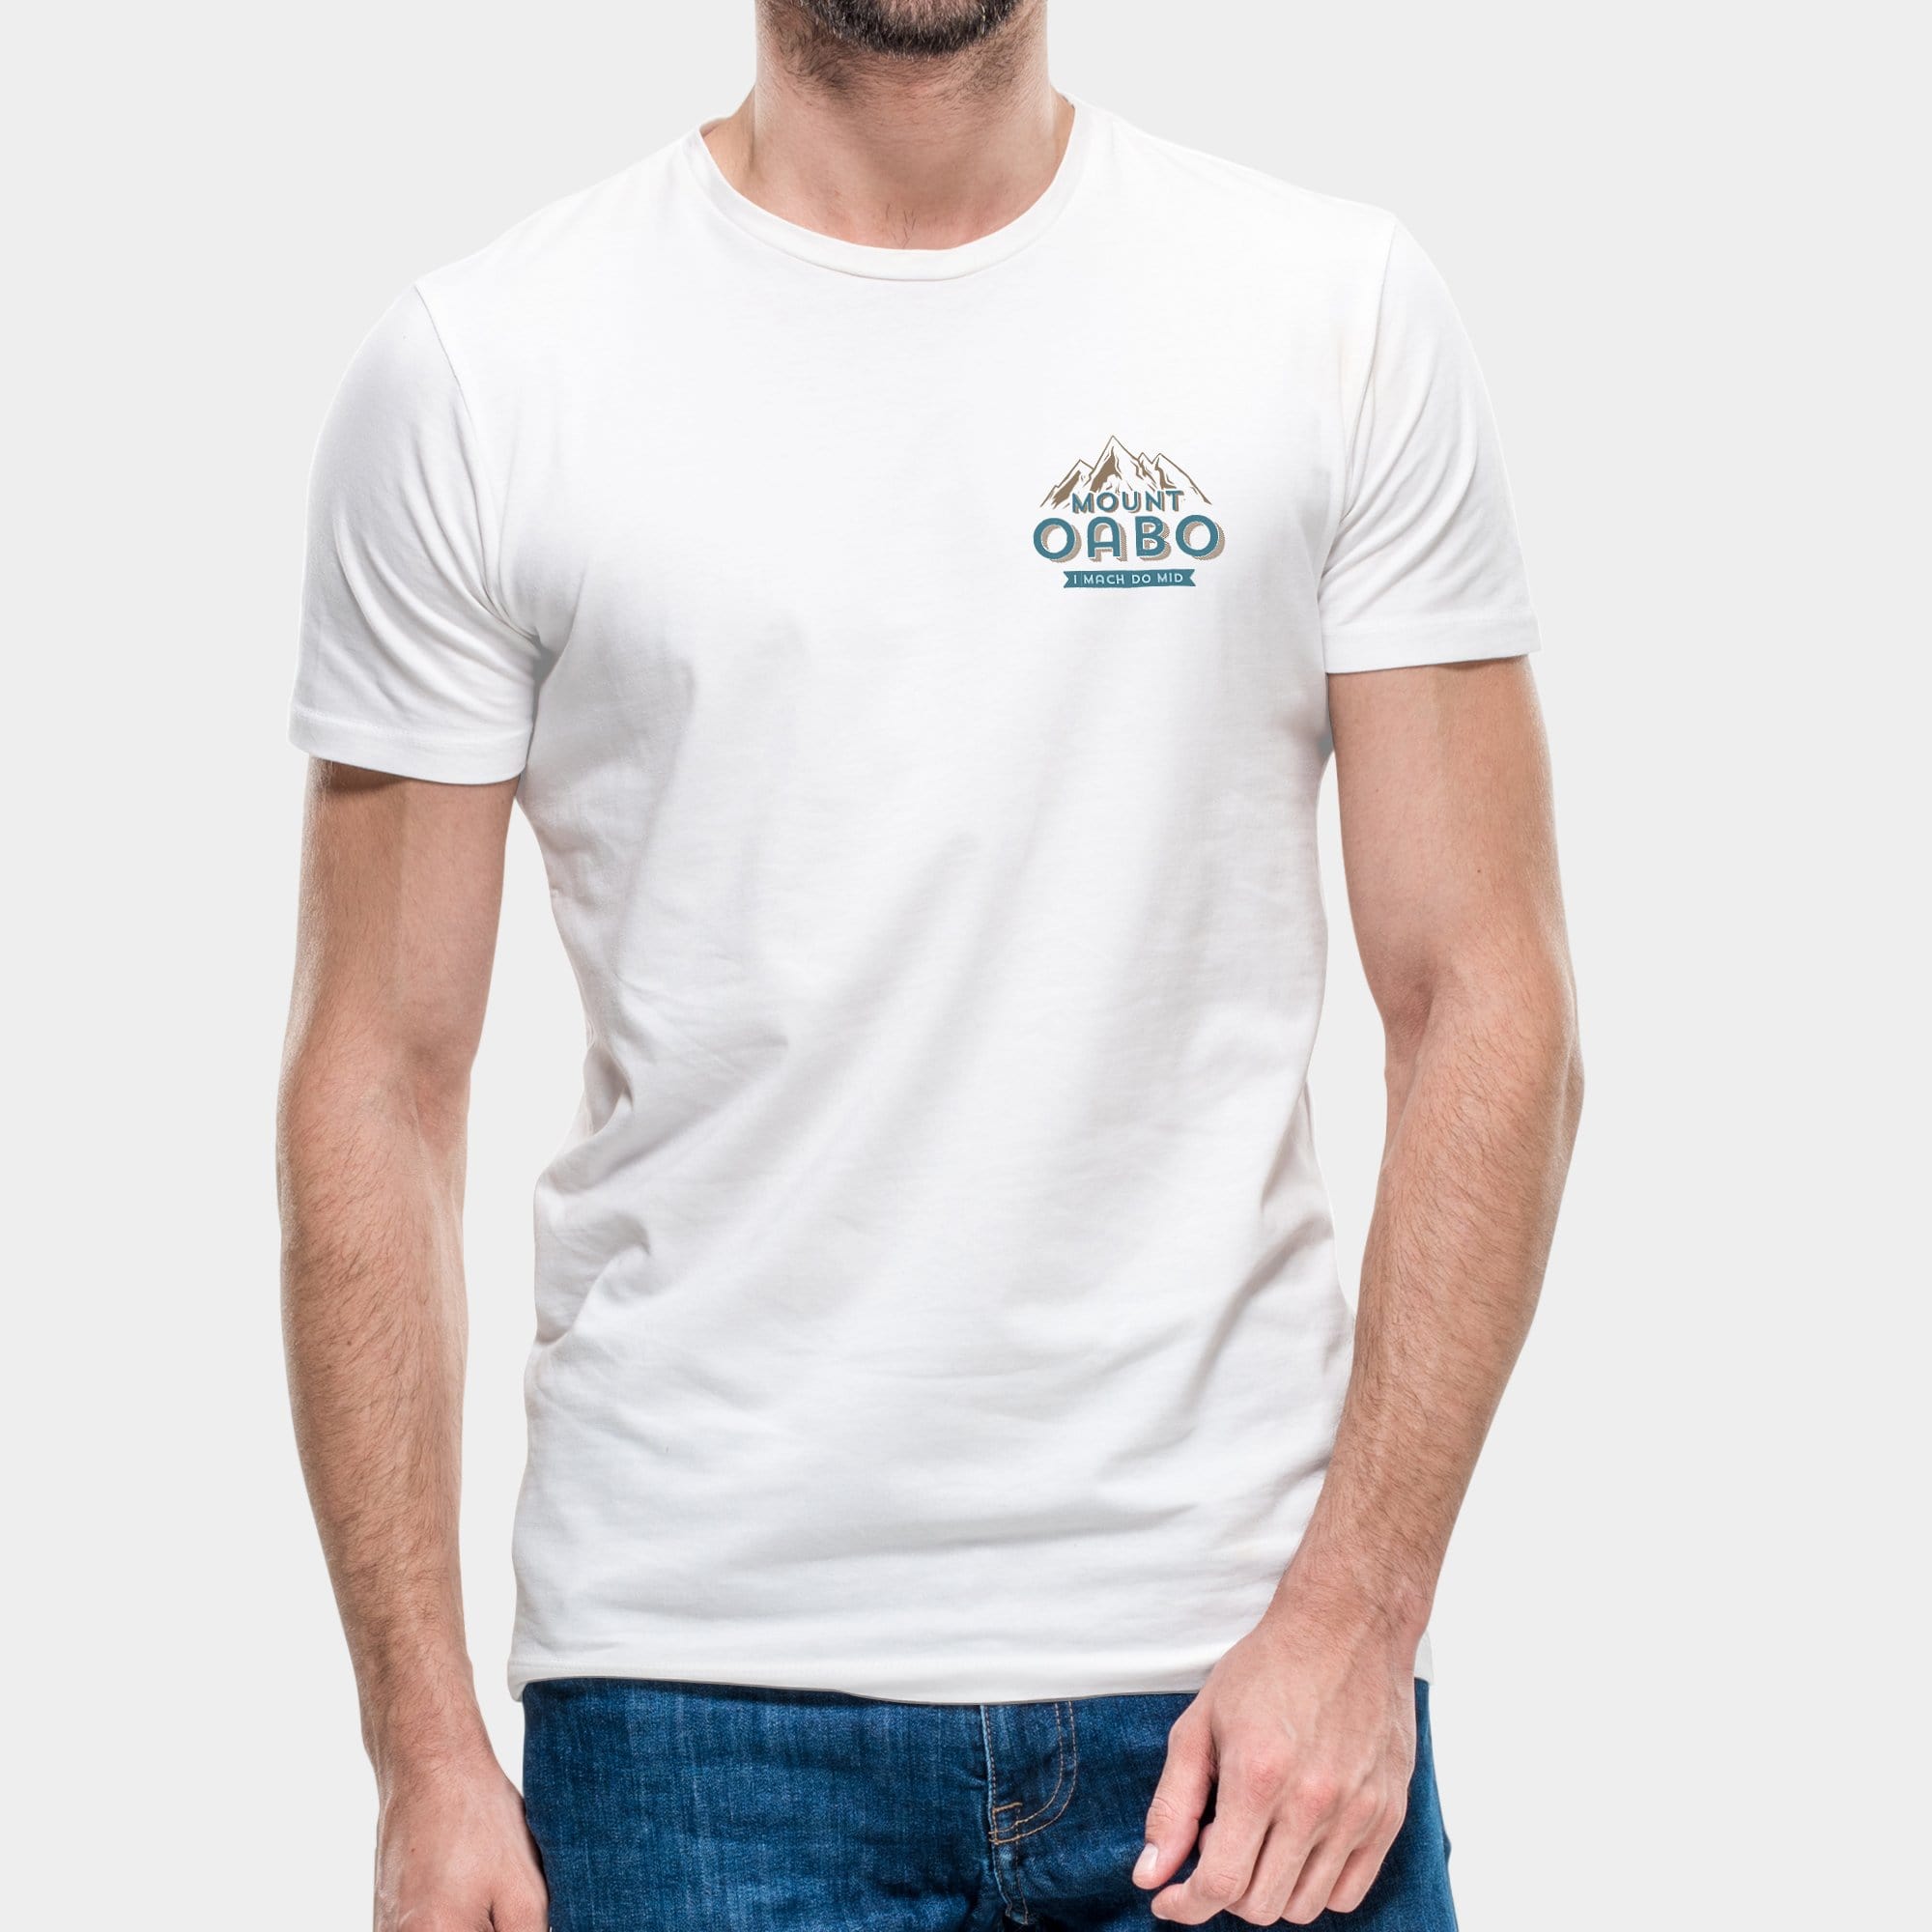 Projekt Herren-T-Shirt "Mount Oabo" S / weiß - aus nachhaltiger und fairer Produktion